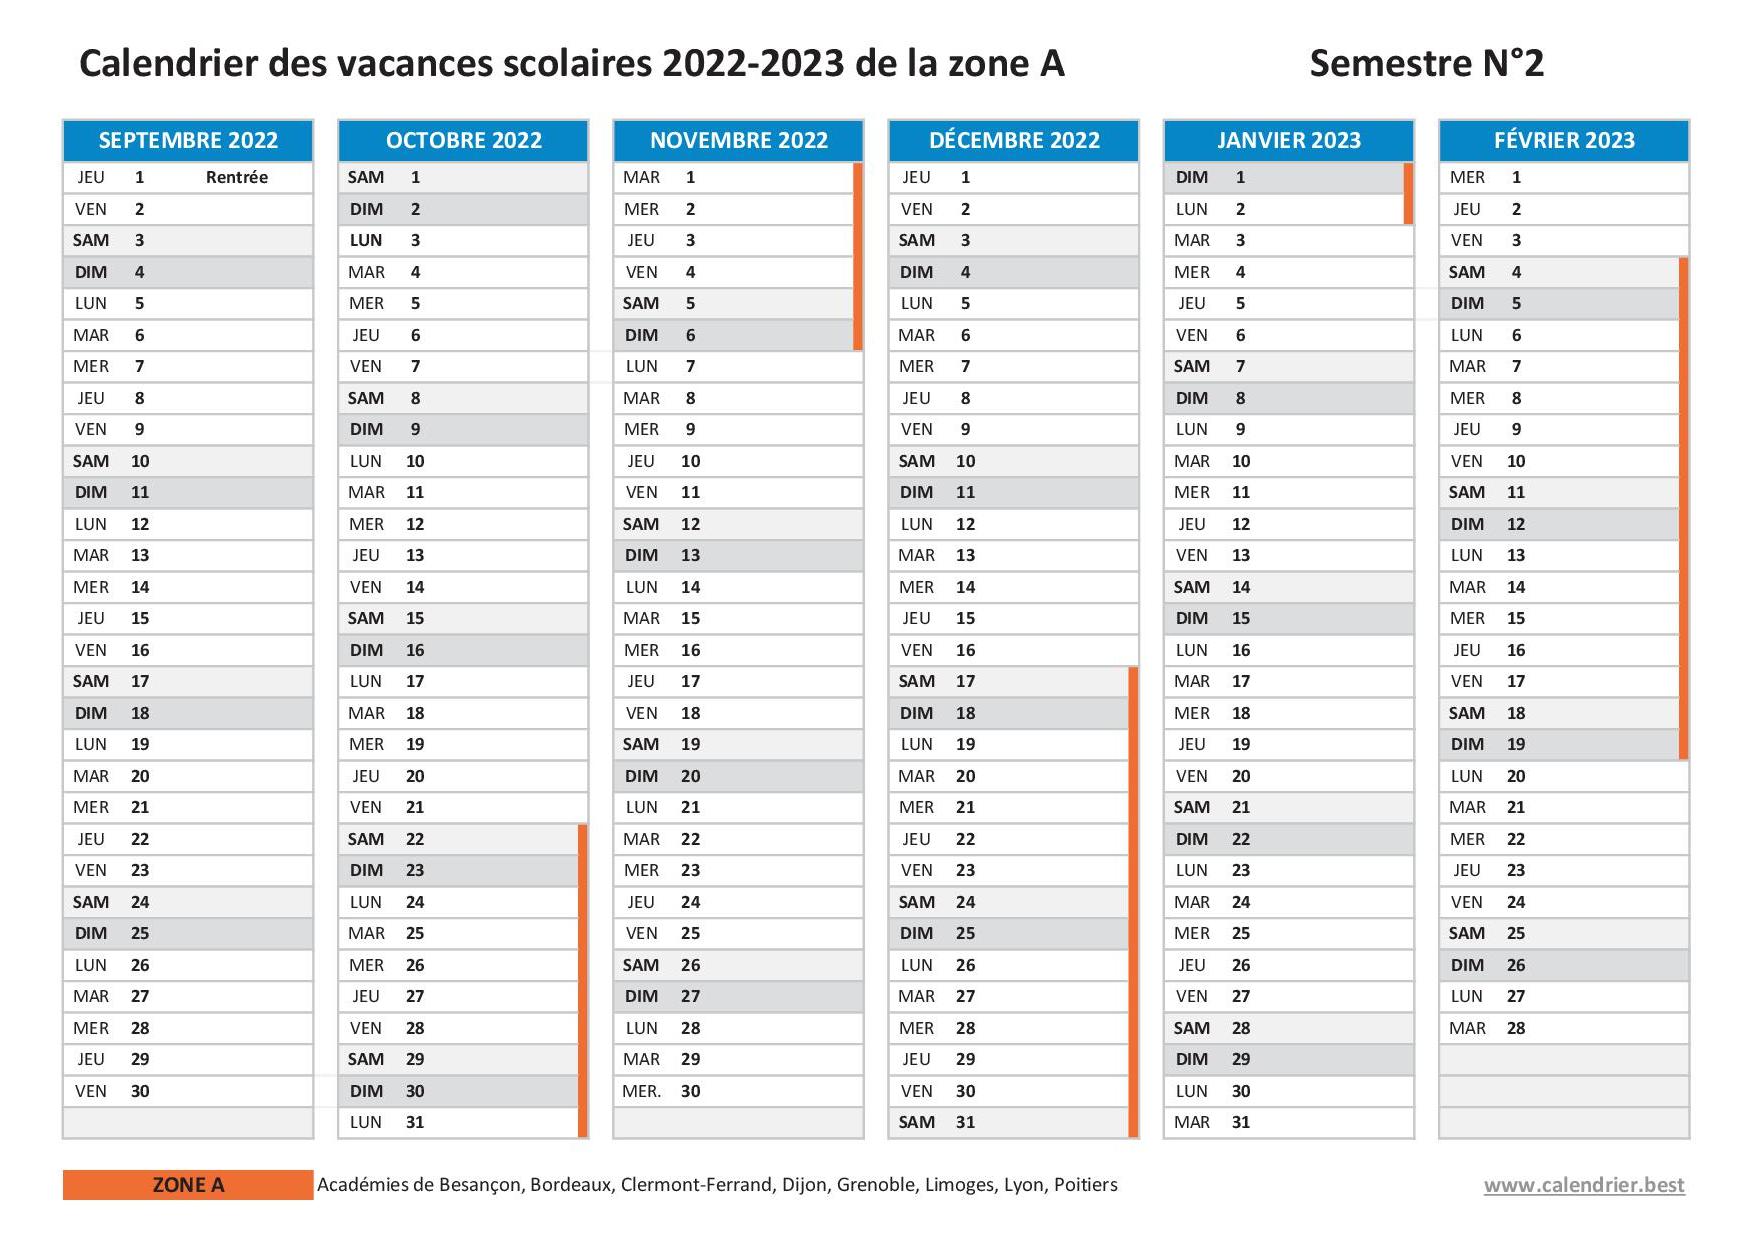 Vacances scolaires 2022-2023 ZONE A - Calendrier scolaire 2022-2023 de la zone  A à imprimer